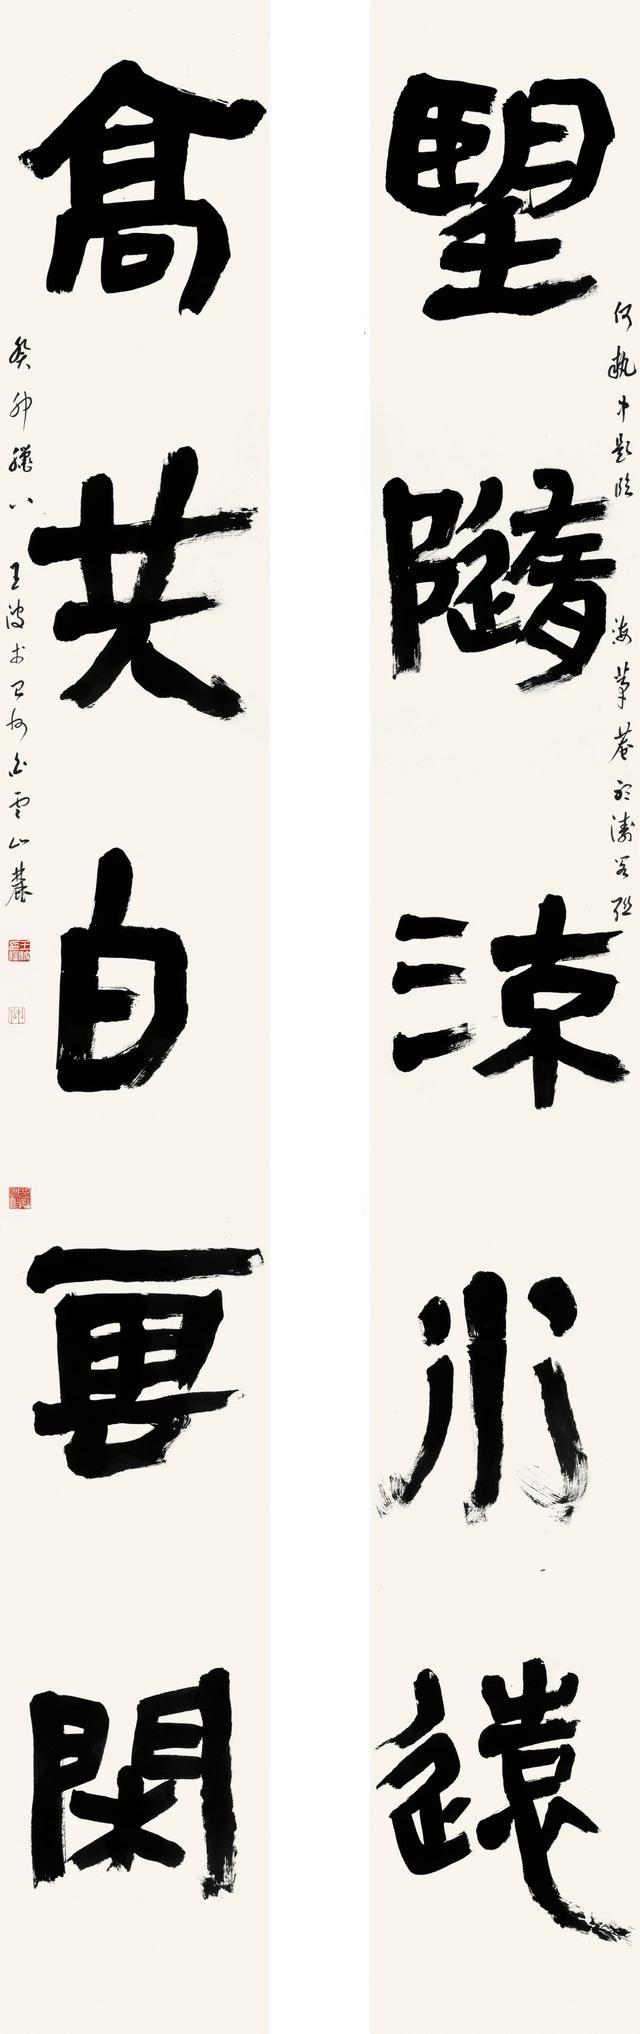 和合台州——王波书法作品展将于5月30日在中国美术馆